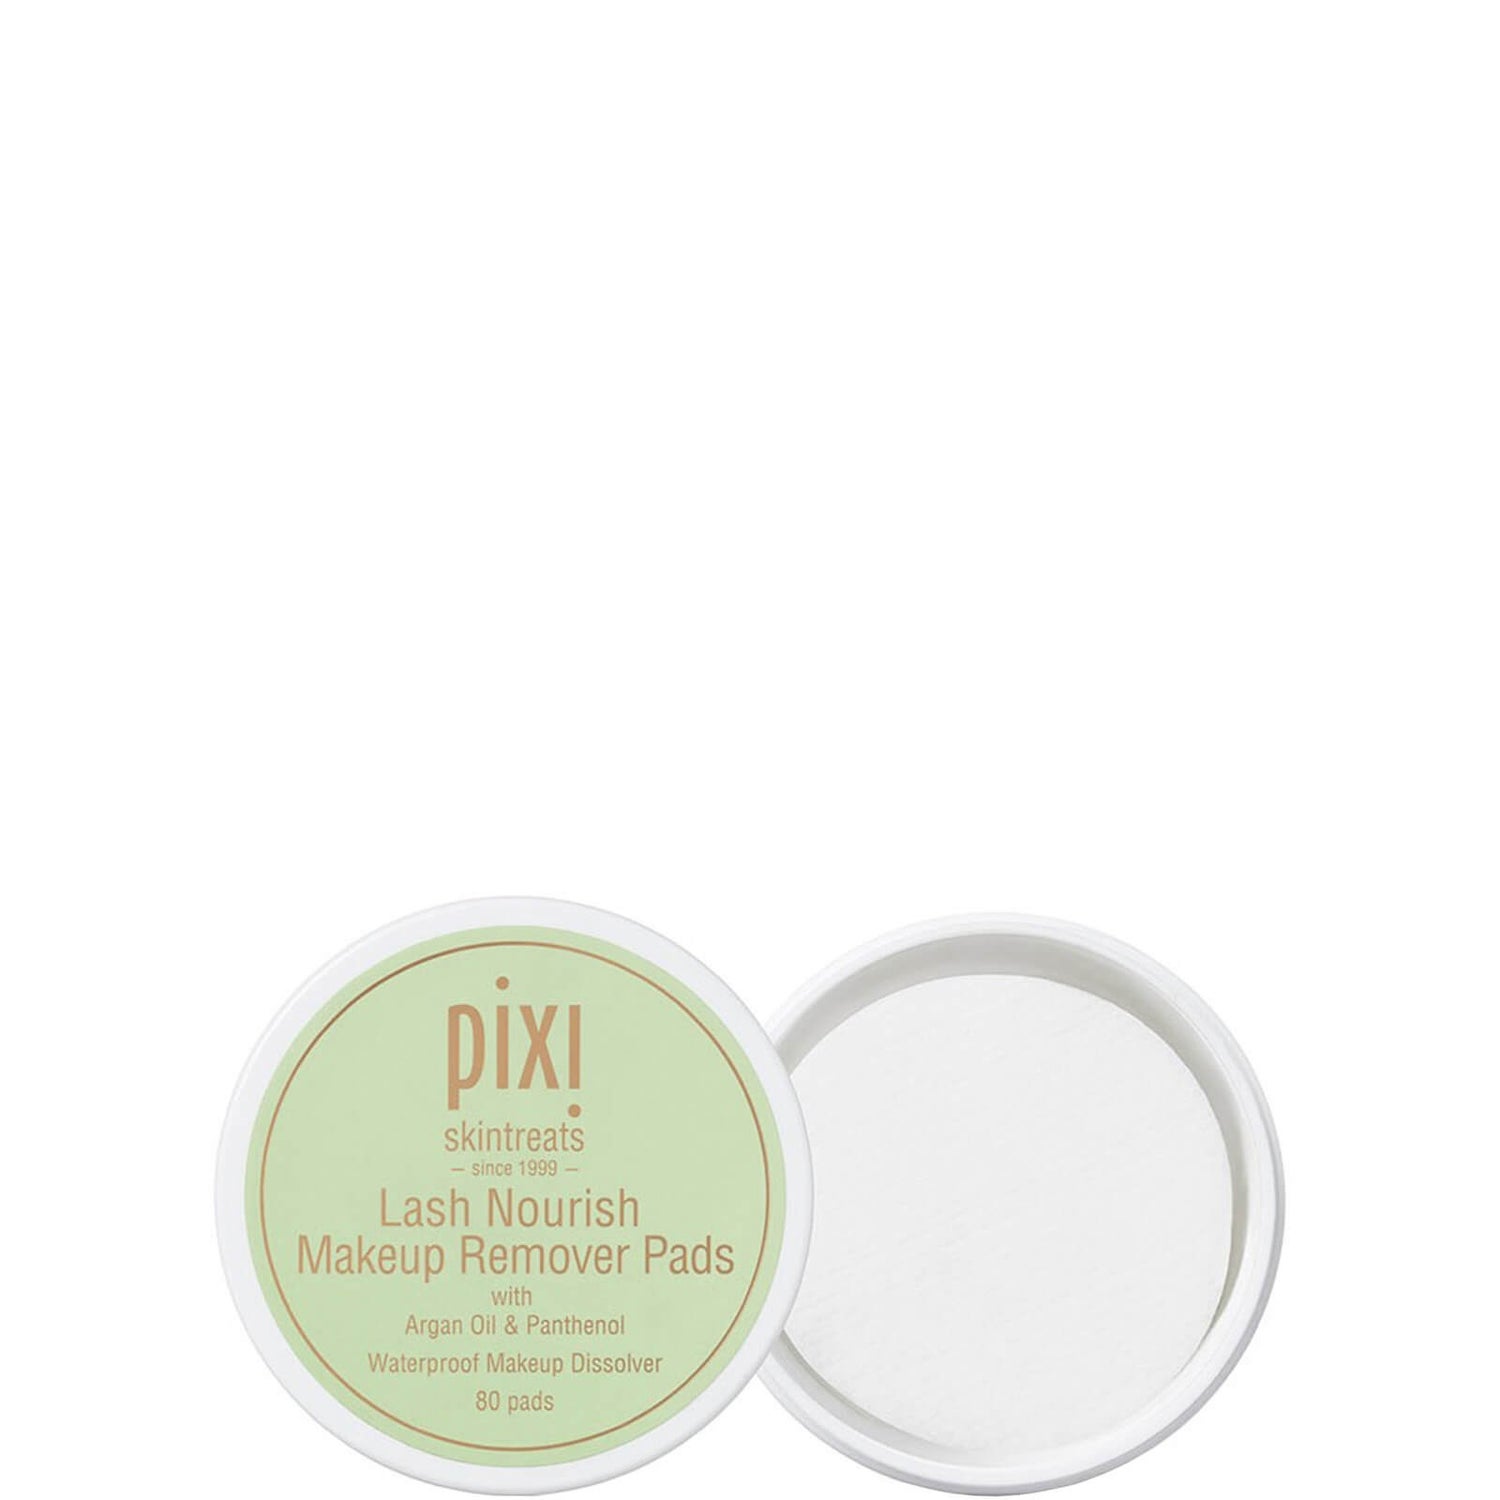 Pixi Lash Nourish Make-Up Remover Pads Тампоны для снятия макияжа (В упаковке 80 шт.)